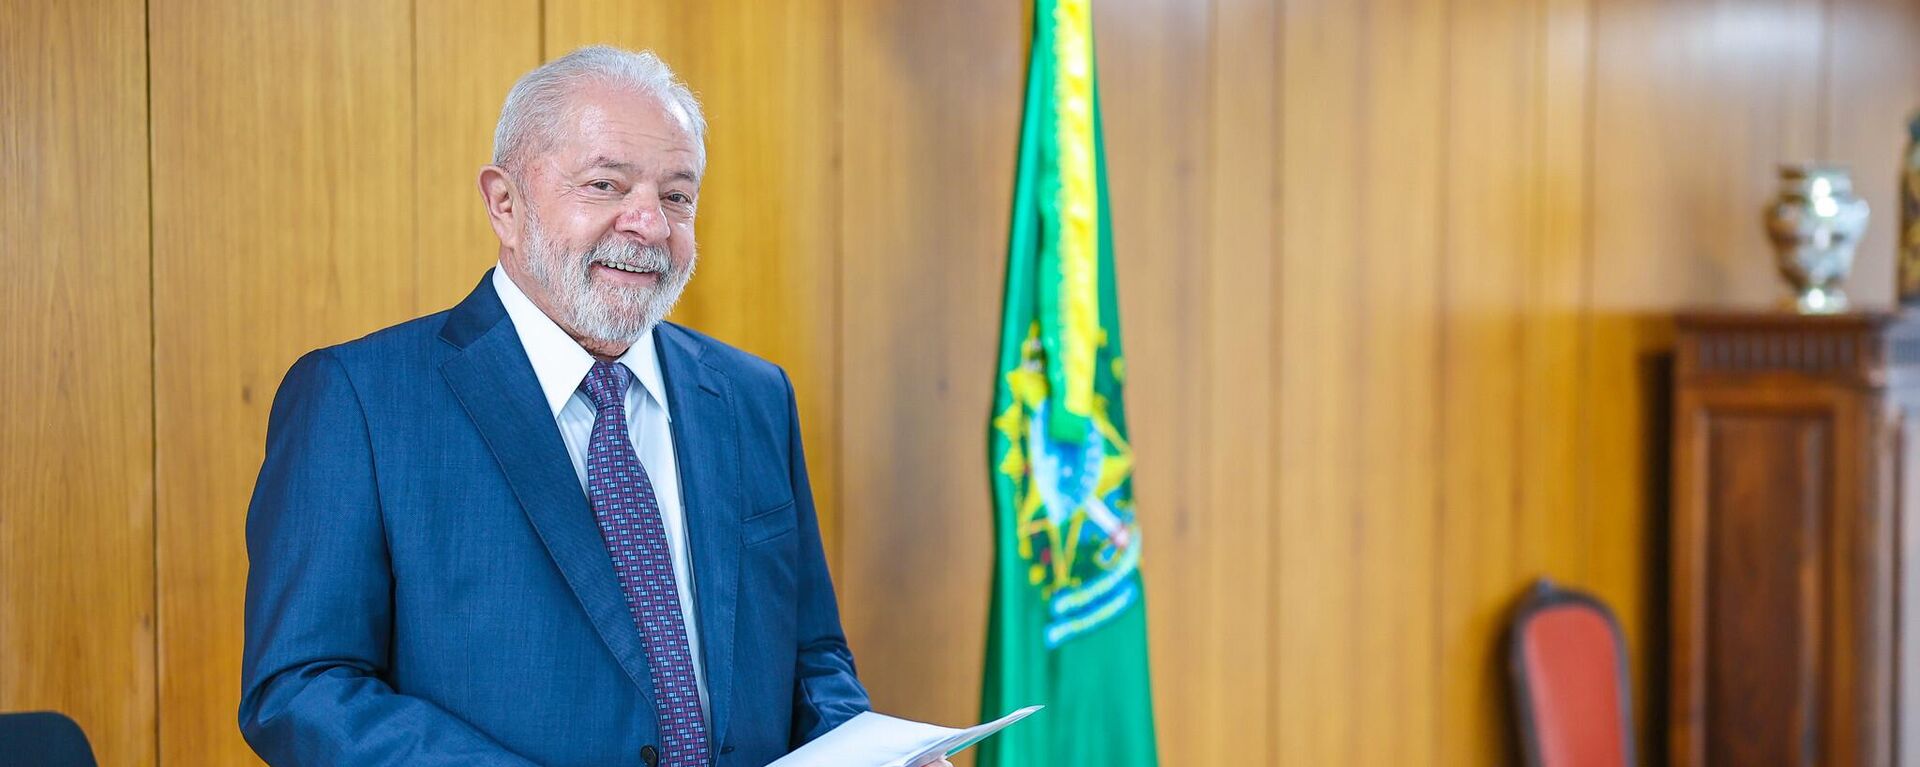 O presidente Luiz Inácio Lula da Silva no gabinete do Palácio do Planalto. Brasília, 4 de janeiro de 2023 - Sputnik Brasil, 1920, 07.02.2023